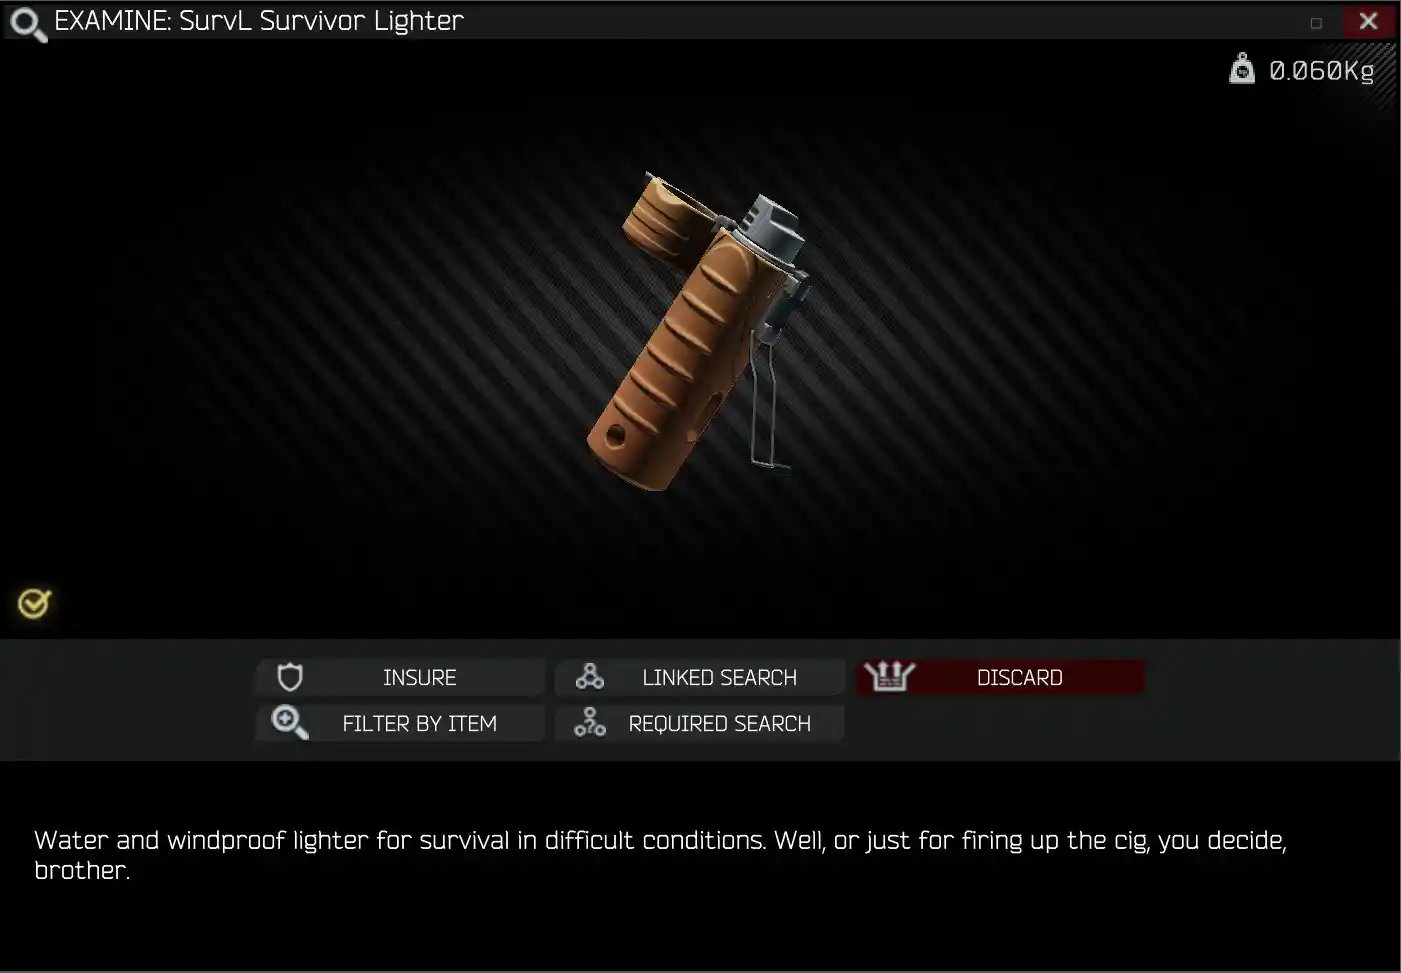 Survl Survivor Lighter.jpg